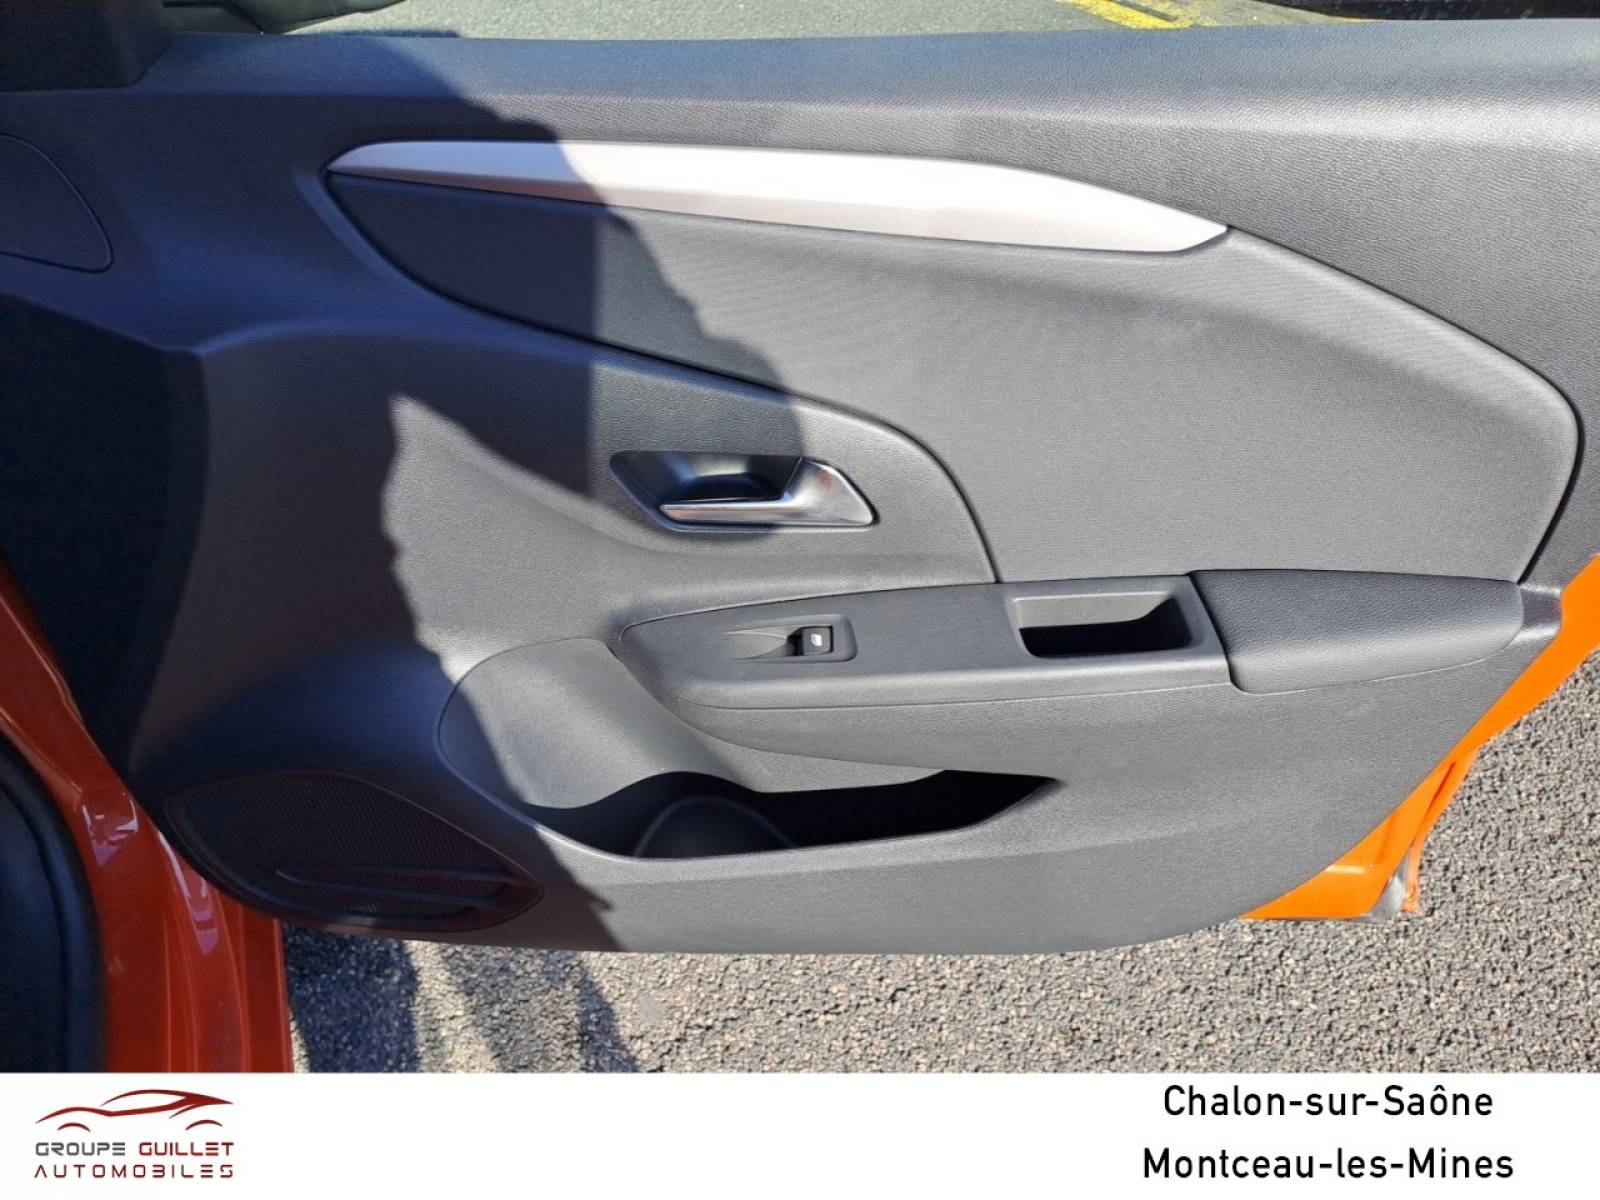 OPEL Corsa Electrique 136 ch & Batterie 50 kWh - véhicule d'occasion - Groupe Guillet - Opel Magicauto Chalon - 71380 - Saint-Marcel - 34